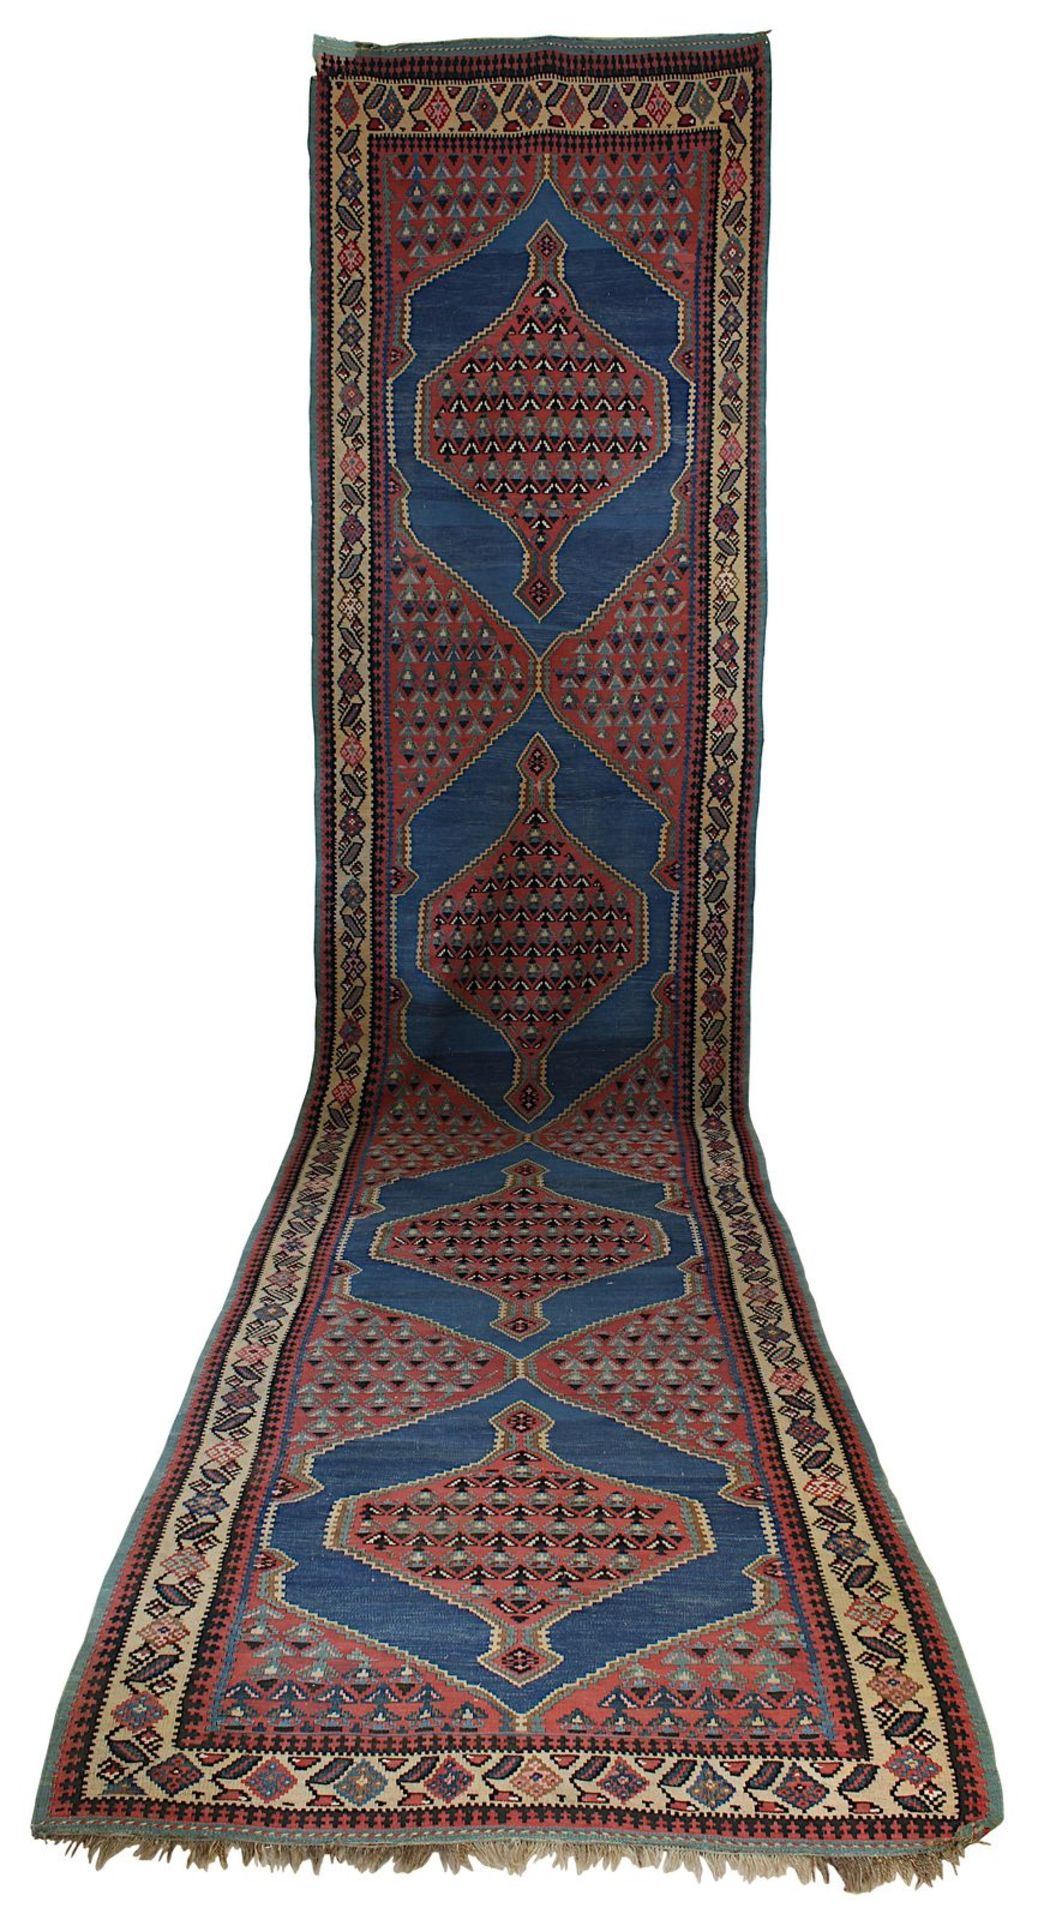 Außergewöhnliche Kelim - Galerie, Persien 1. H. 20. Jh., Wolle auf Wolle, mit 4 gestuften Medaillons